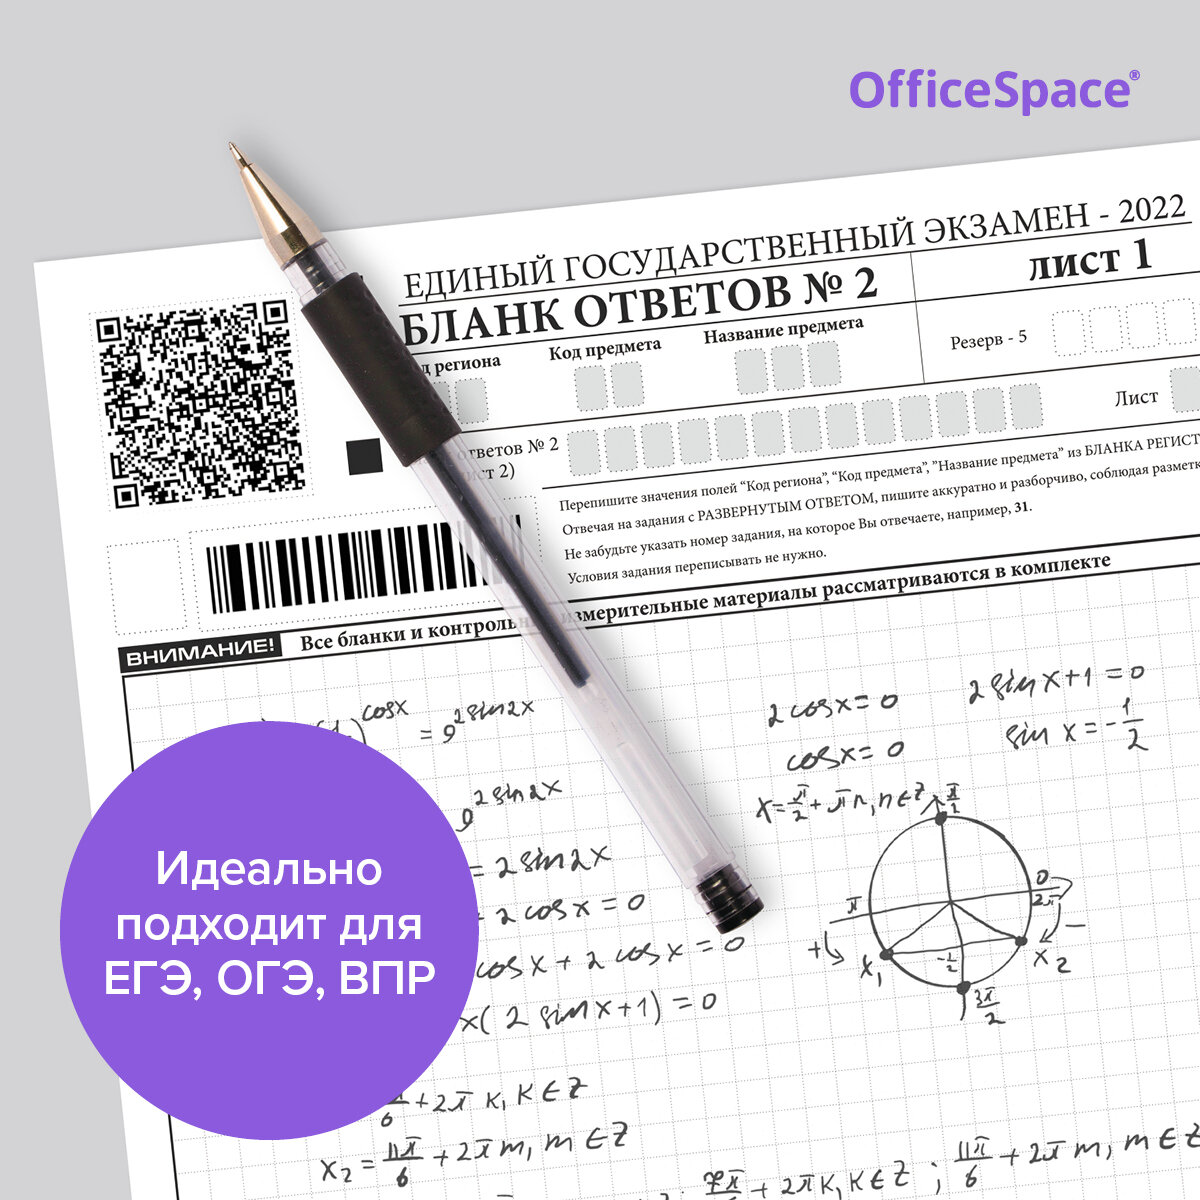 OfficeSpace Набор гелевых ручек, 0.4 мм (GLL10_1331), черный цвет чернил, 12 шт.